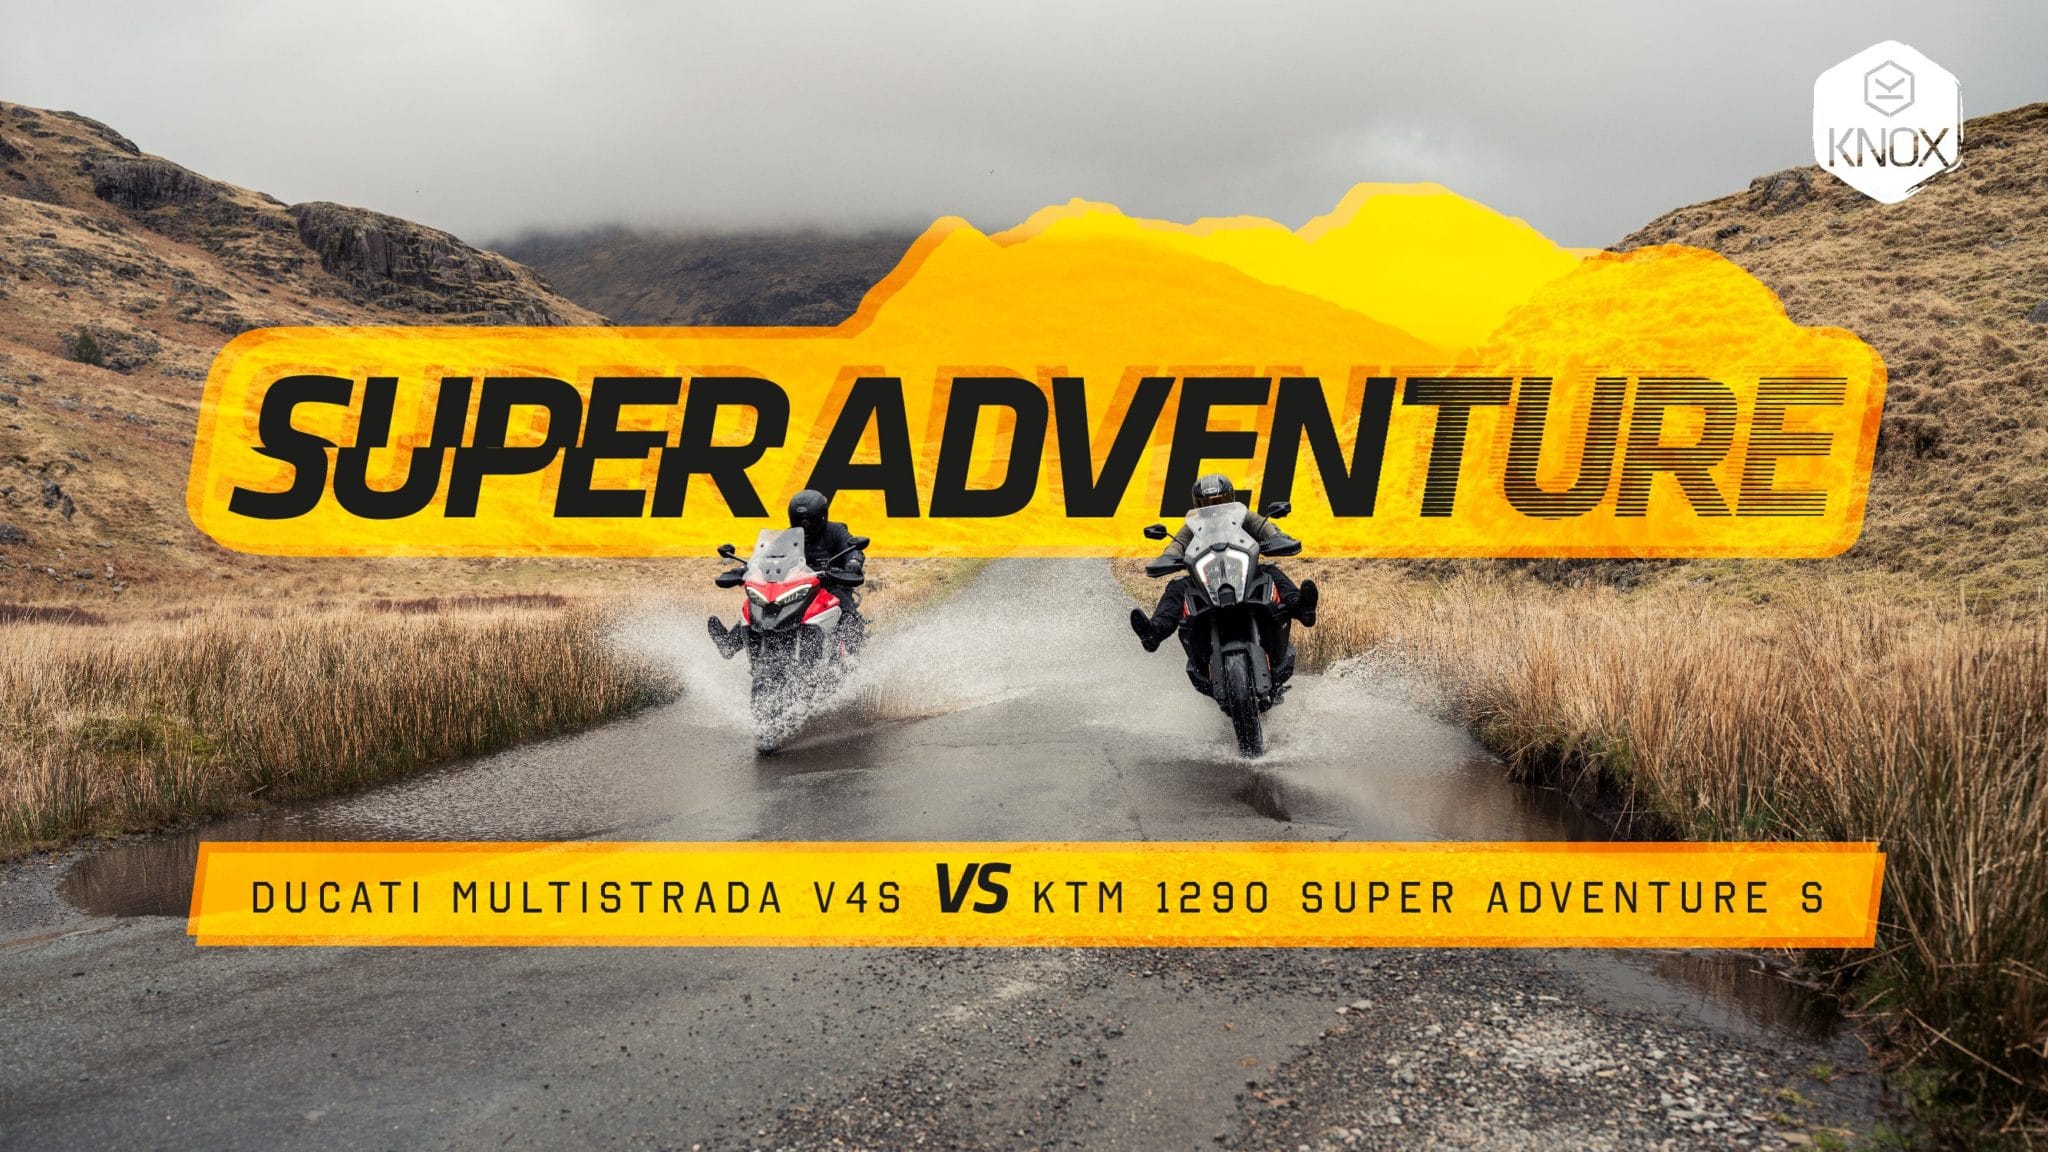 Super Adventure - Ducati Multistrada V4s VS KTM 1290 Super Adventure S